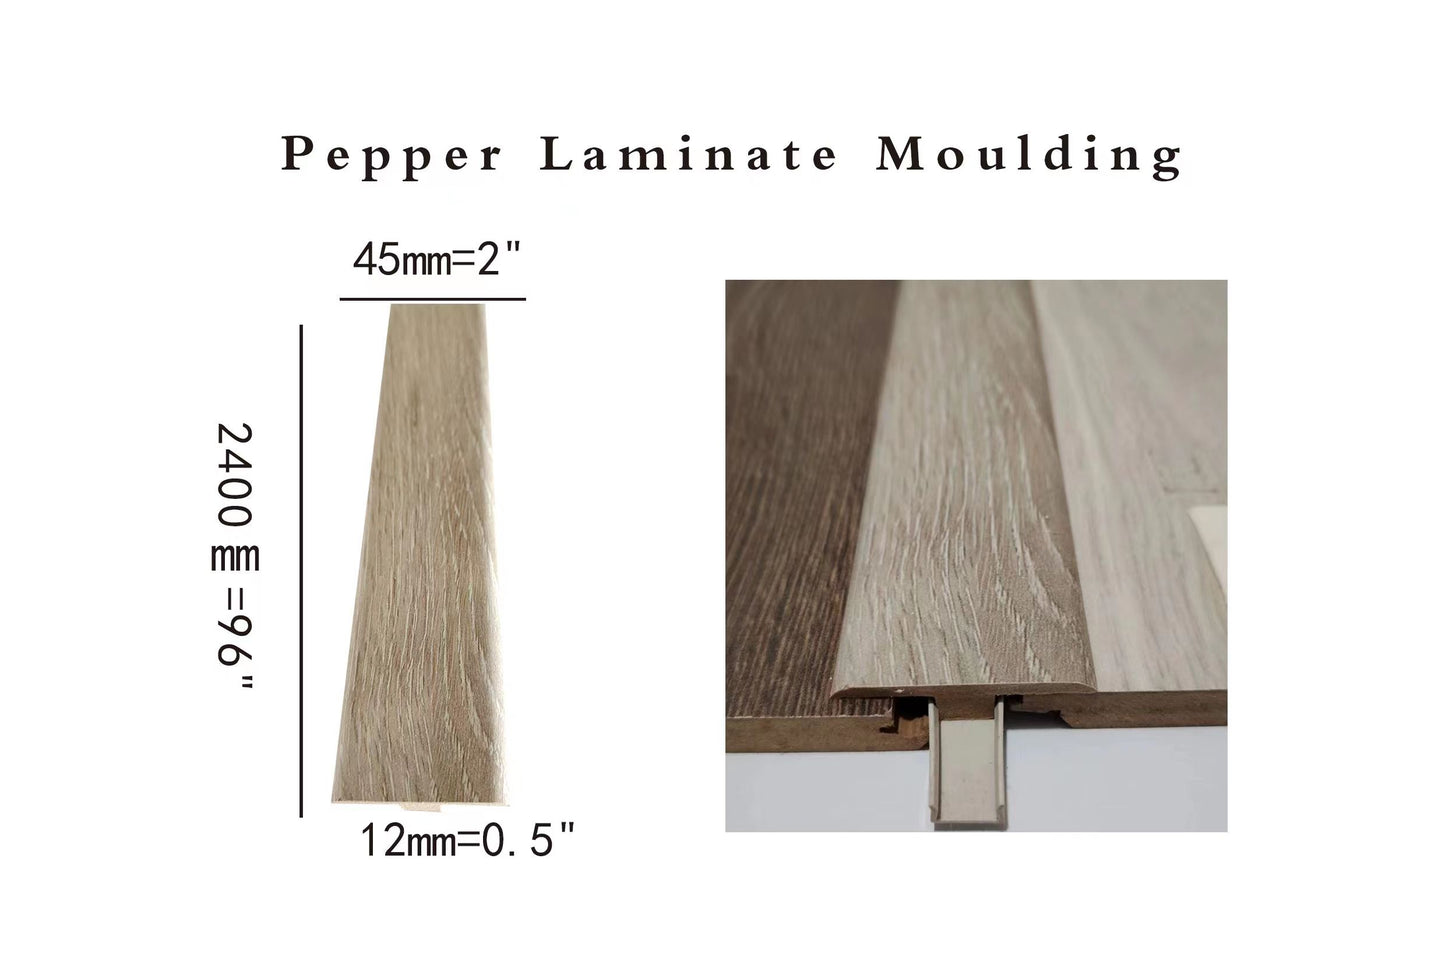 Laminate floor moulding Pepper T-moulding 2400x44.5x11.3mm 1.75"x0.44"x8feet 8feet long $5/pc